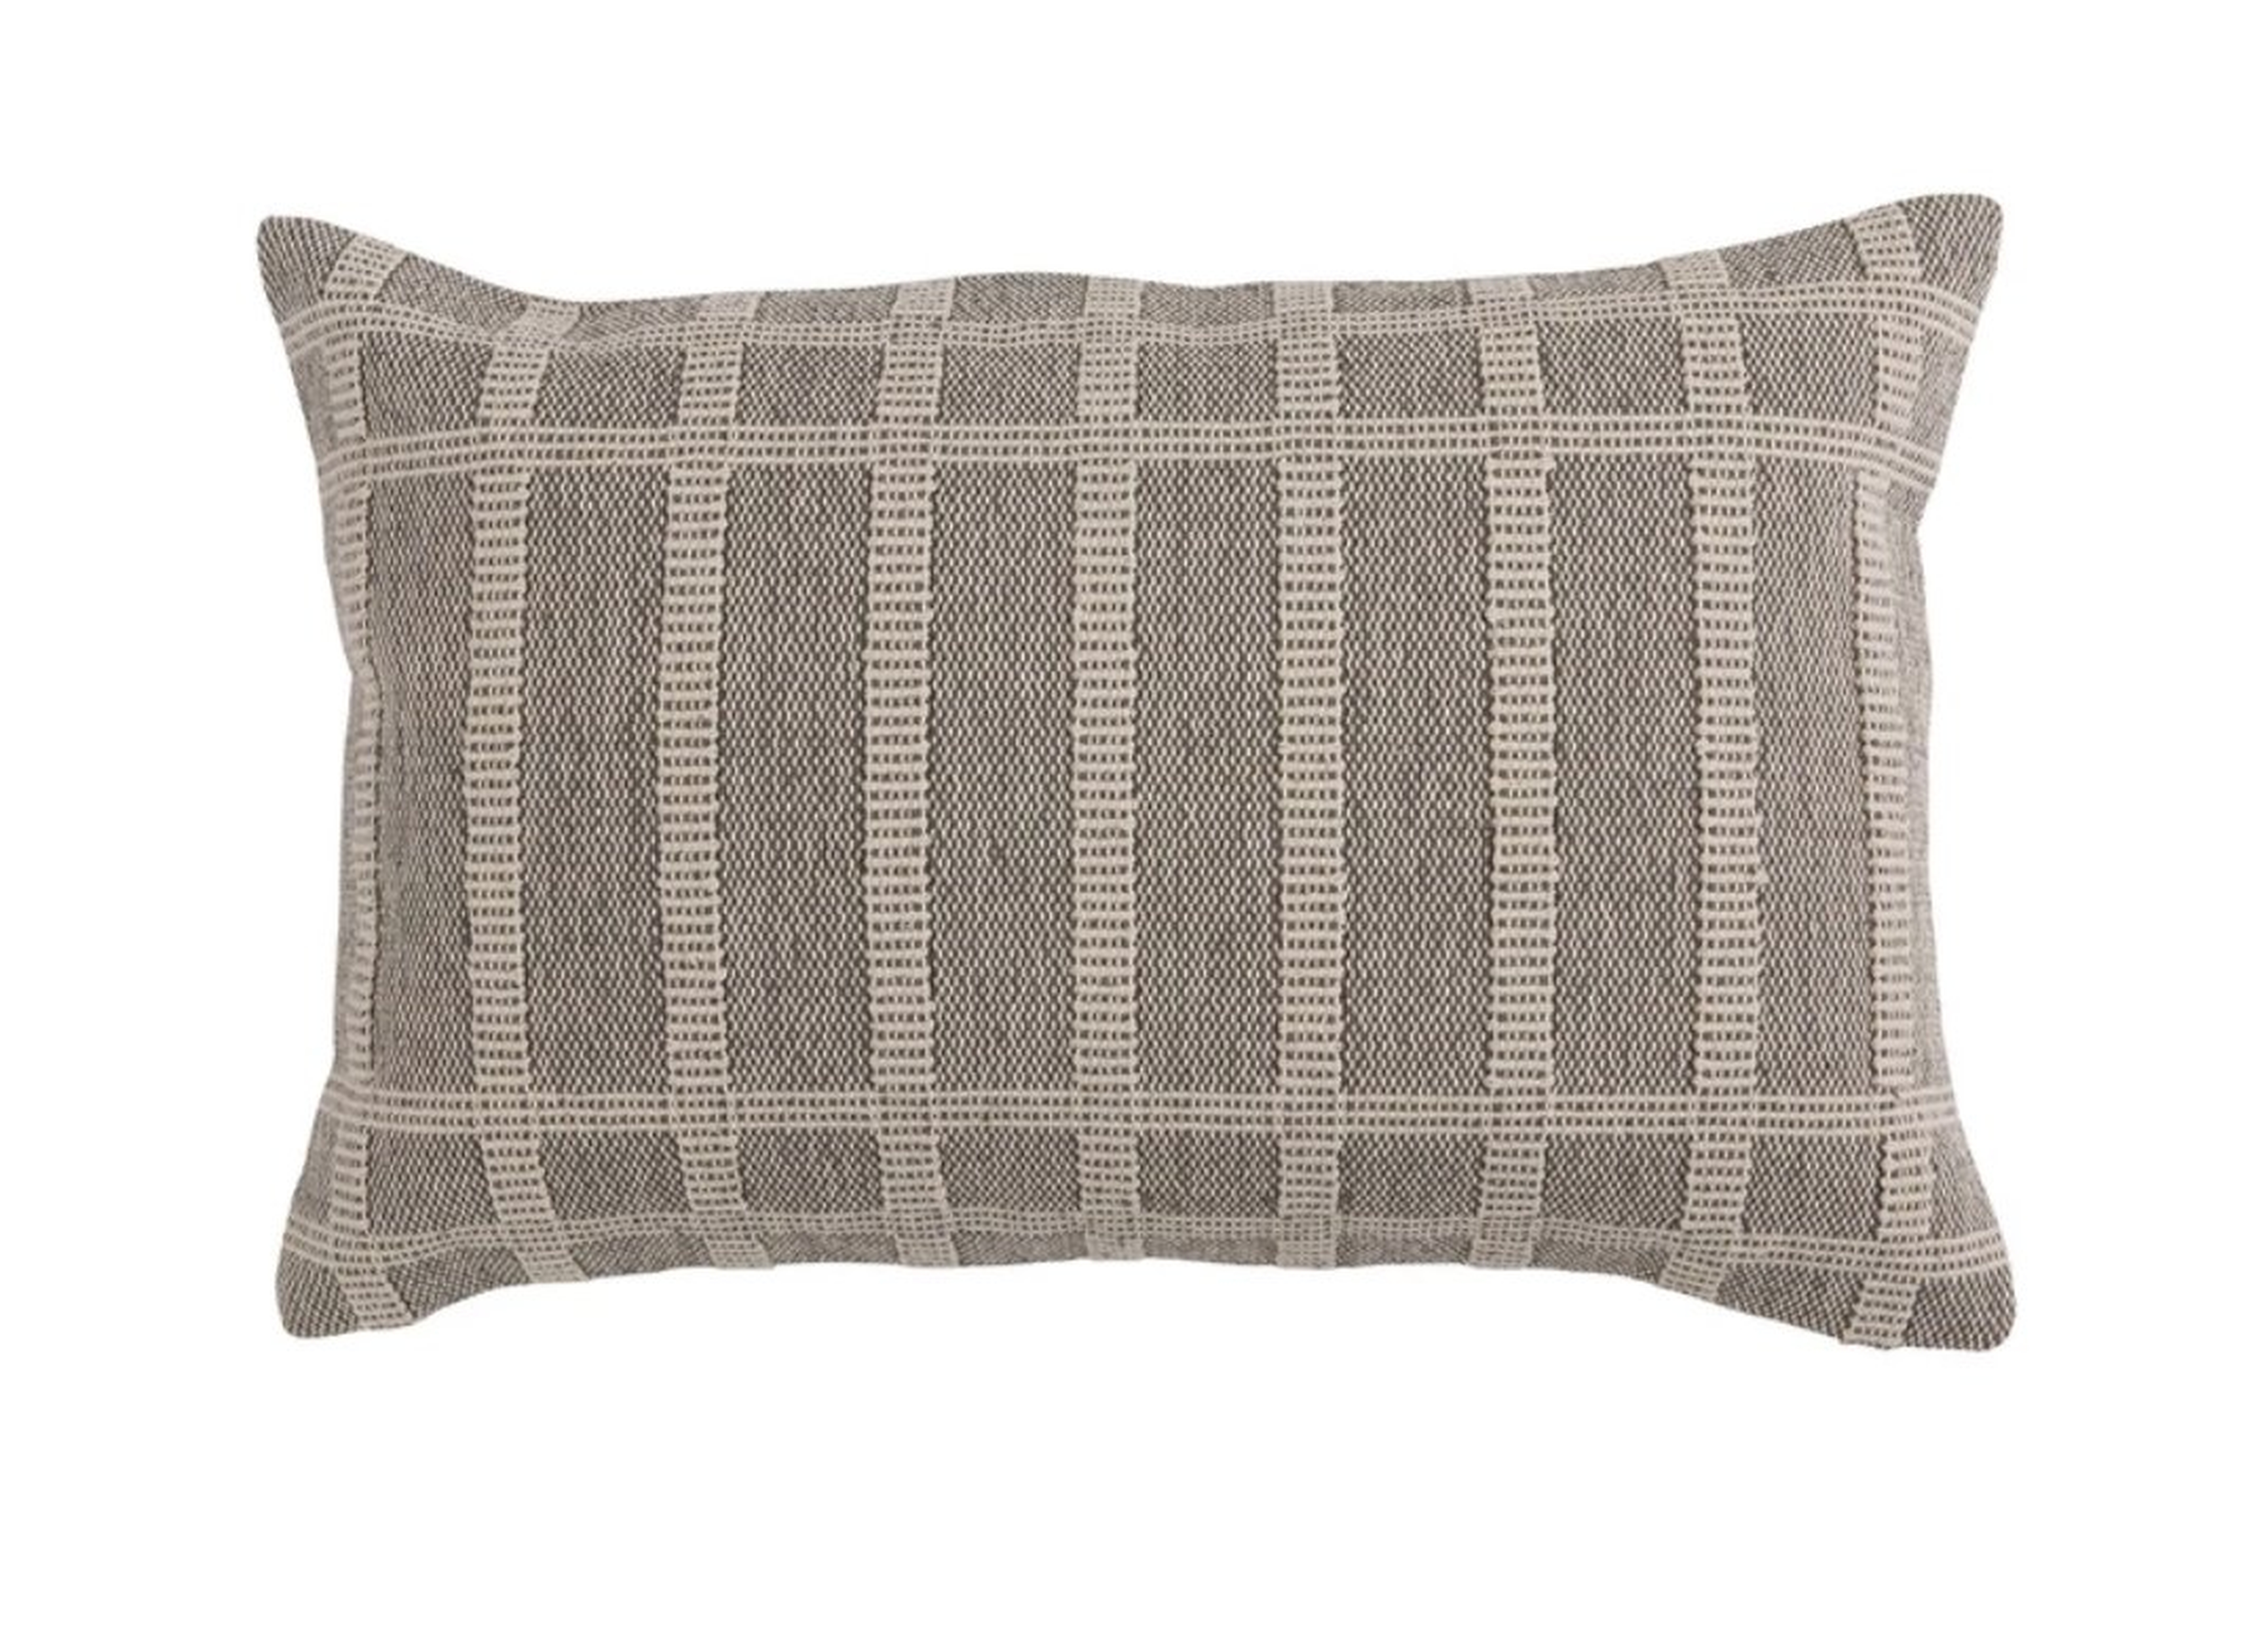 Collins Woven Lumbar Pillow Cover, 20" x 14" - McGee & Co.